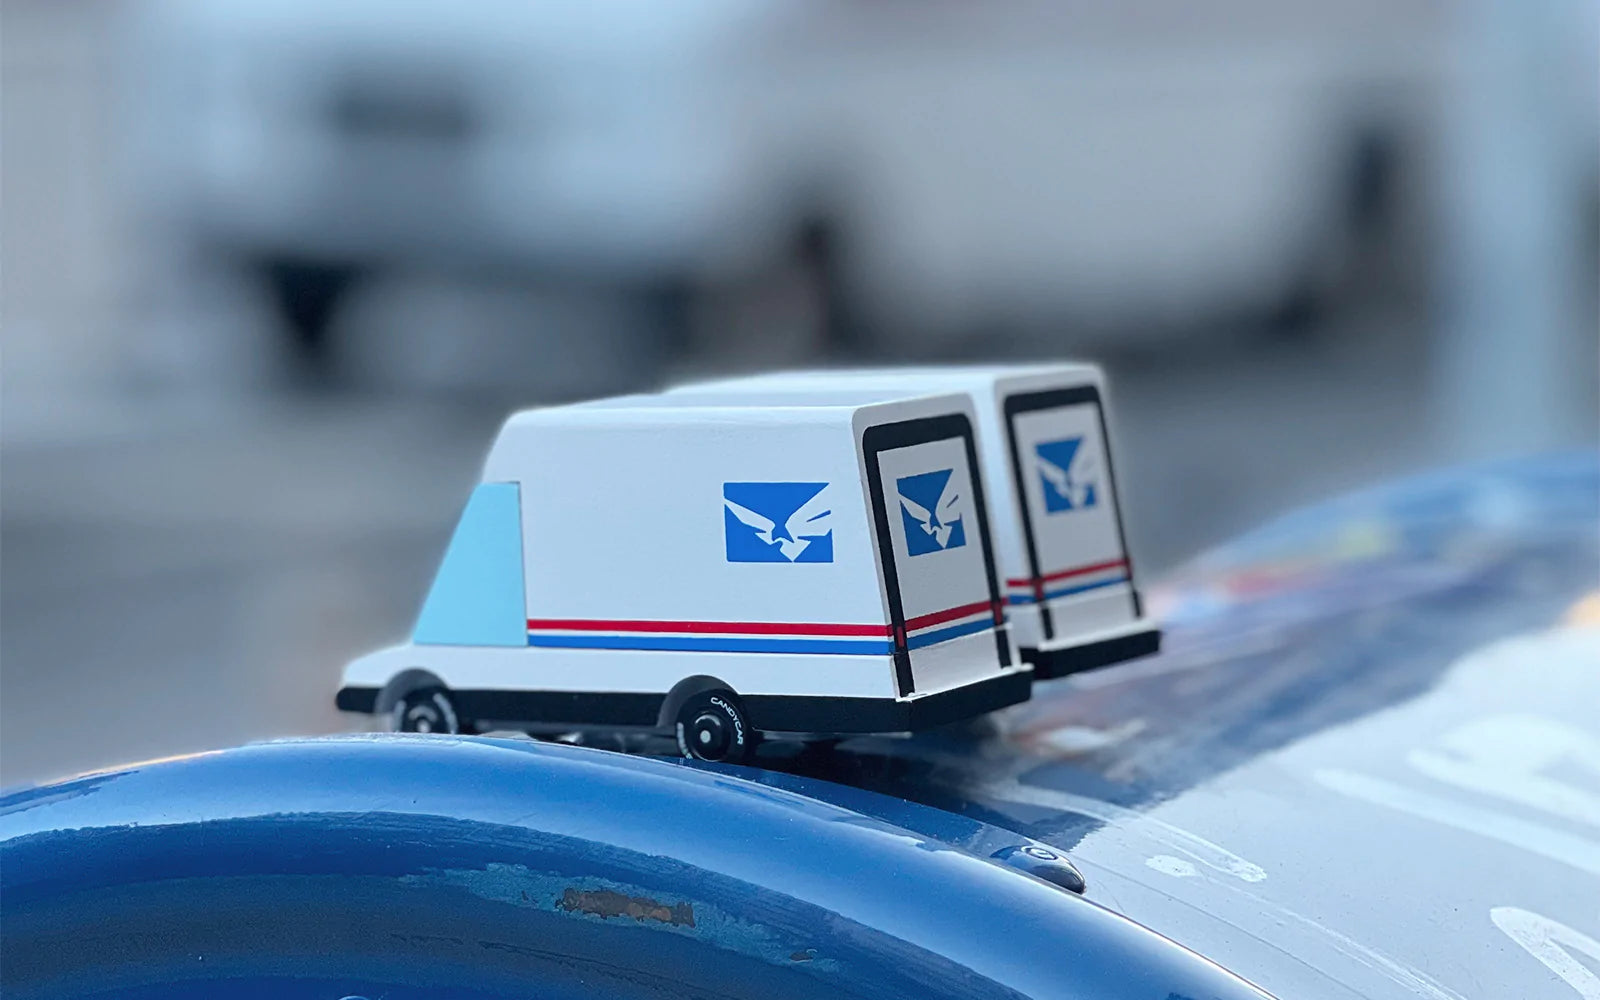 Fourgon postal futuriste Candyvans